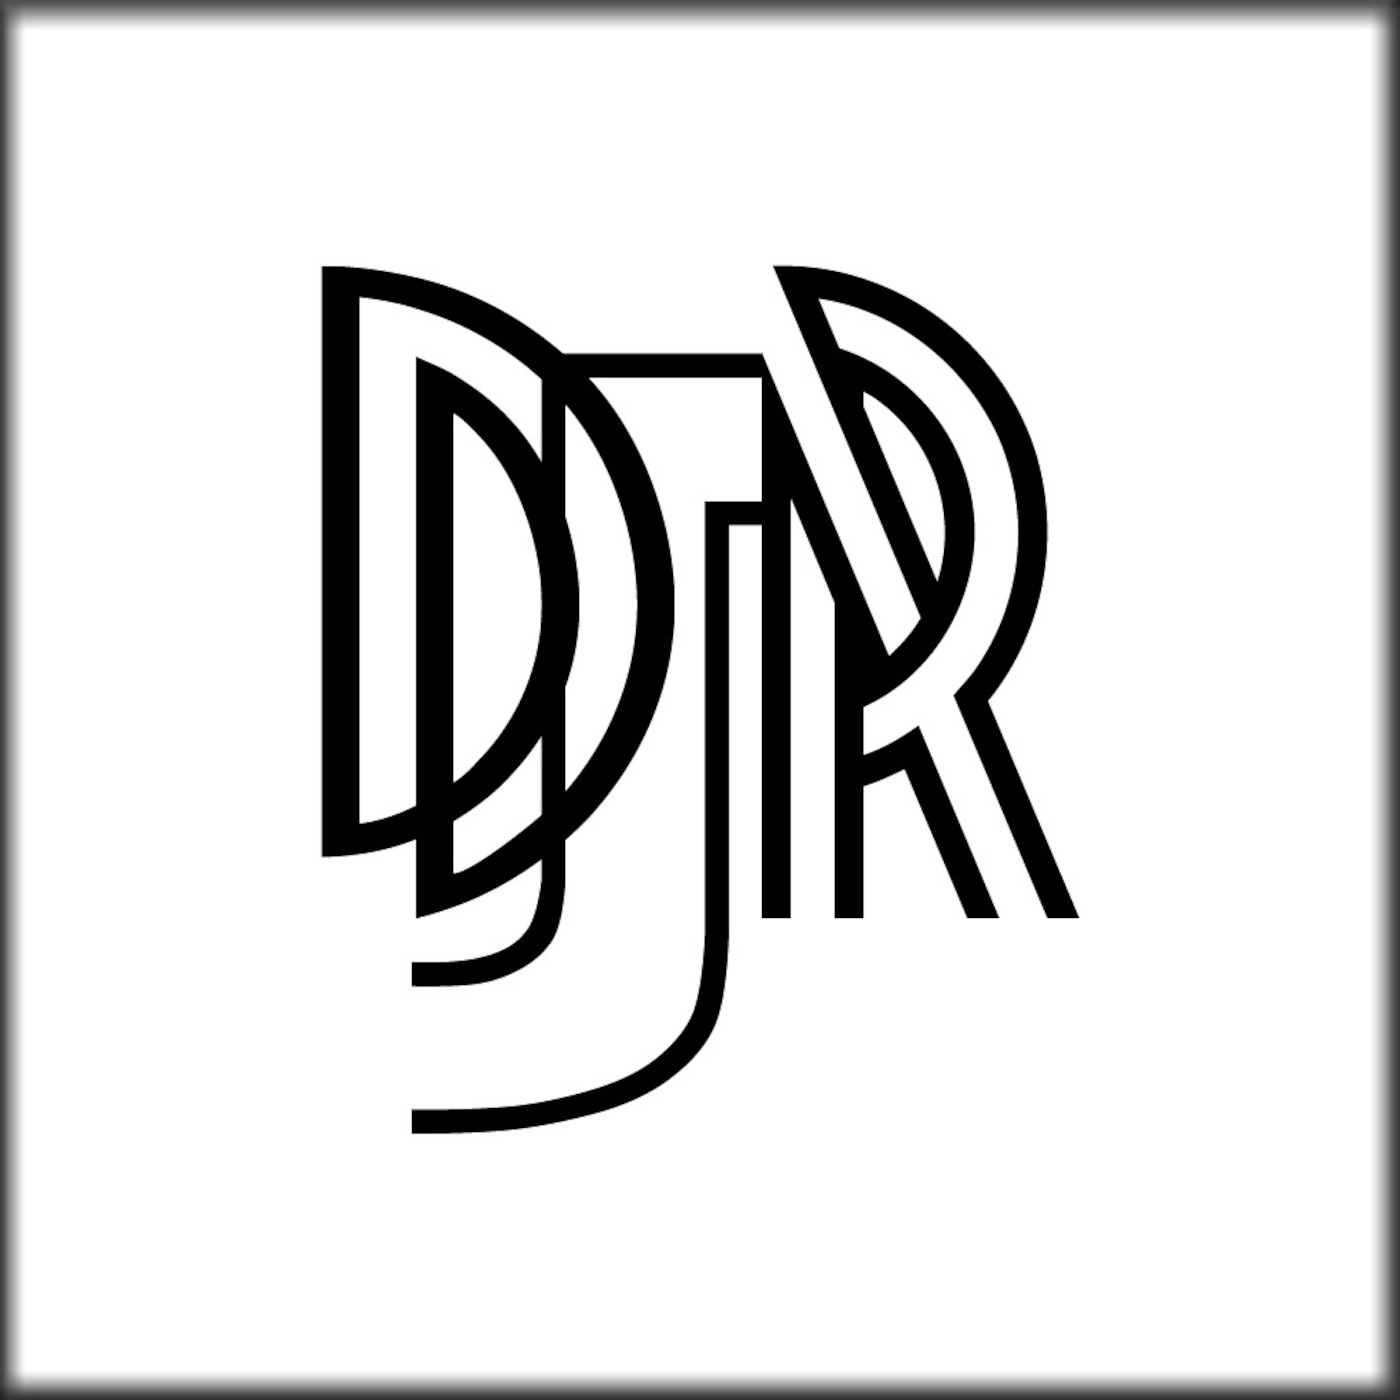 Podcast DJR